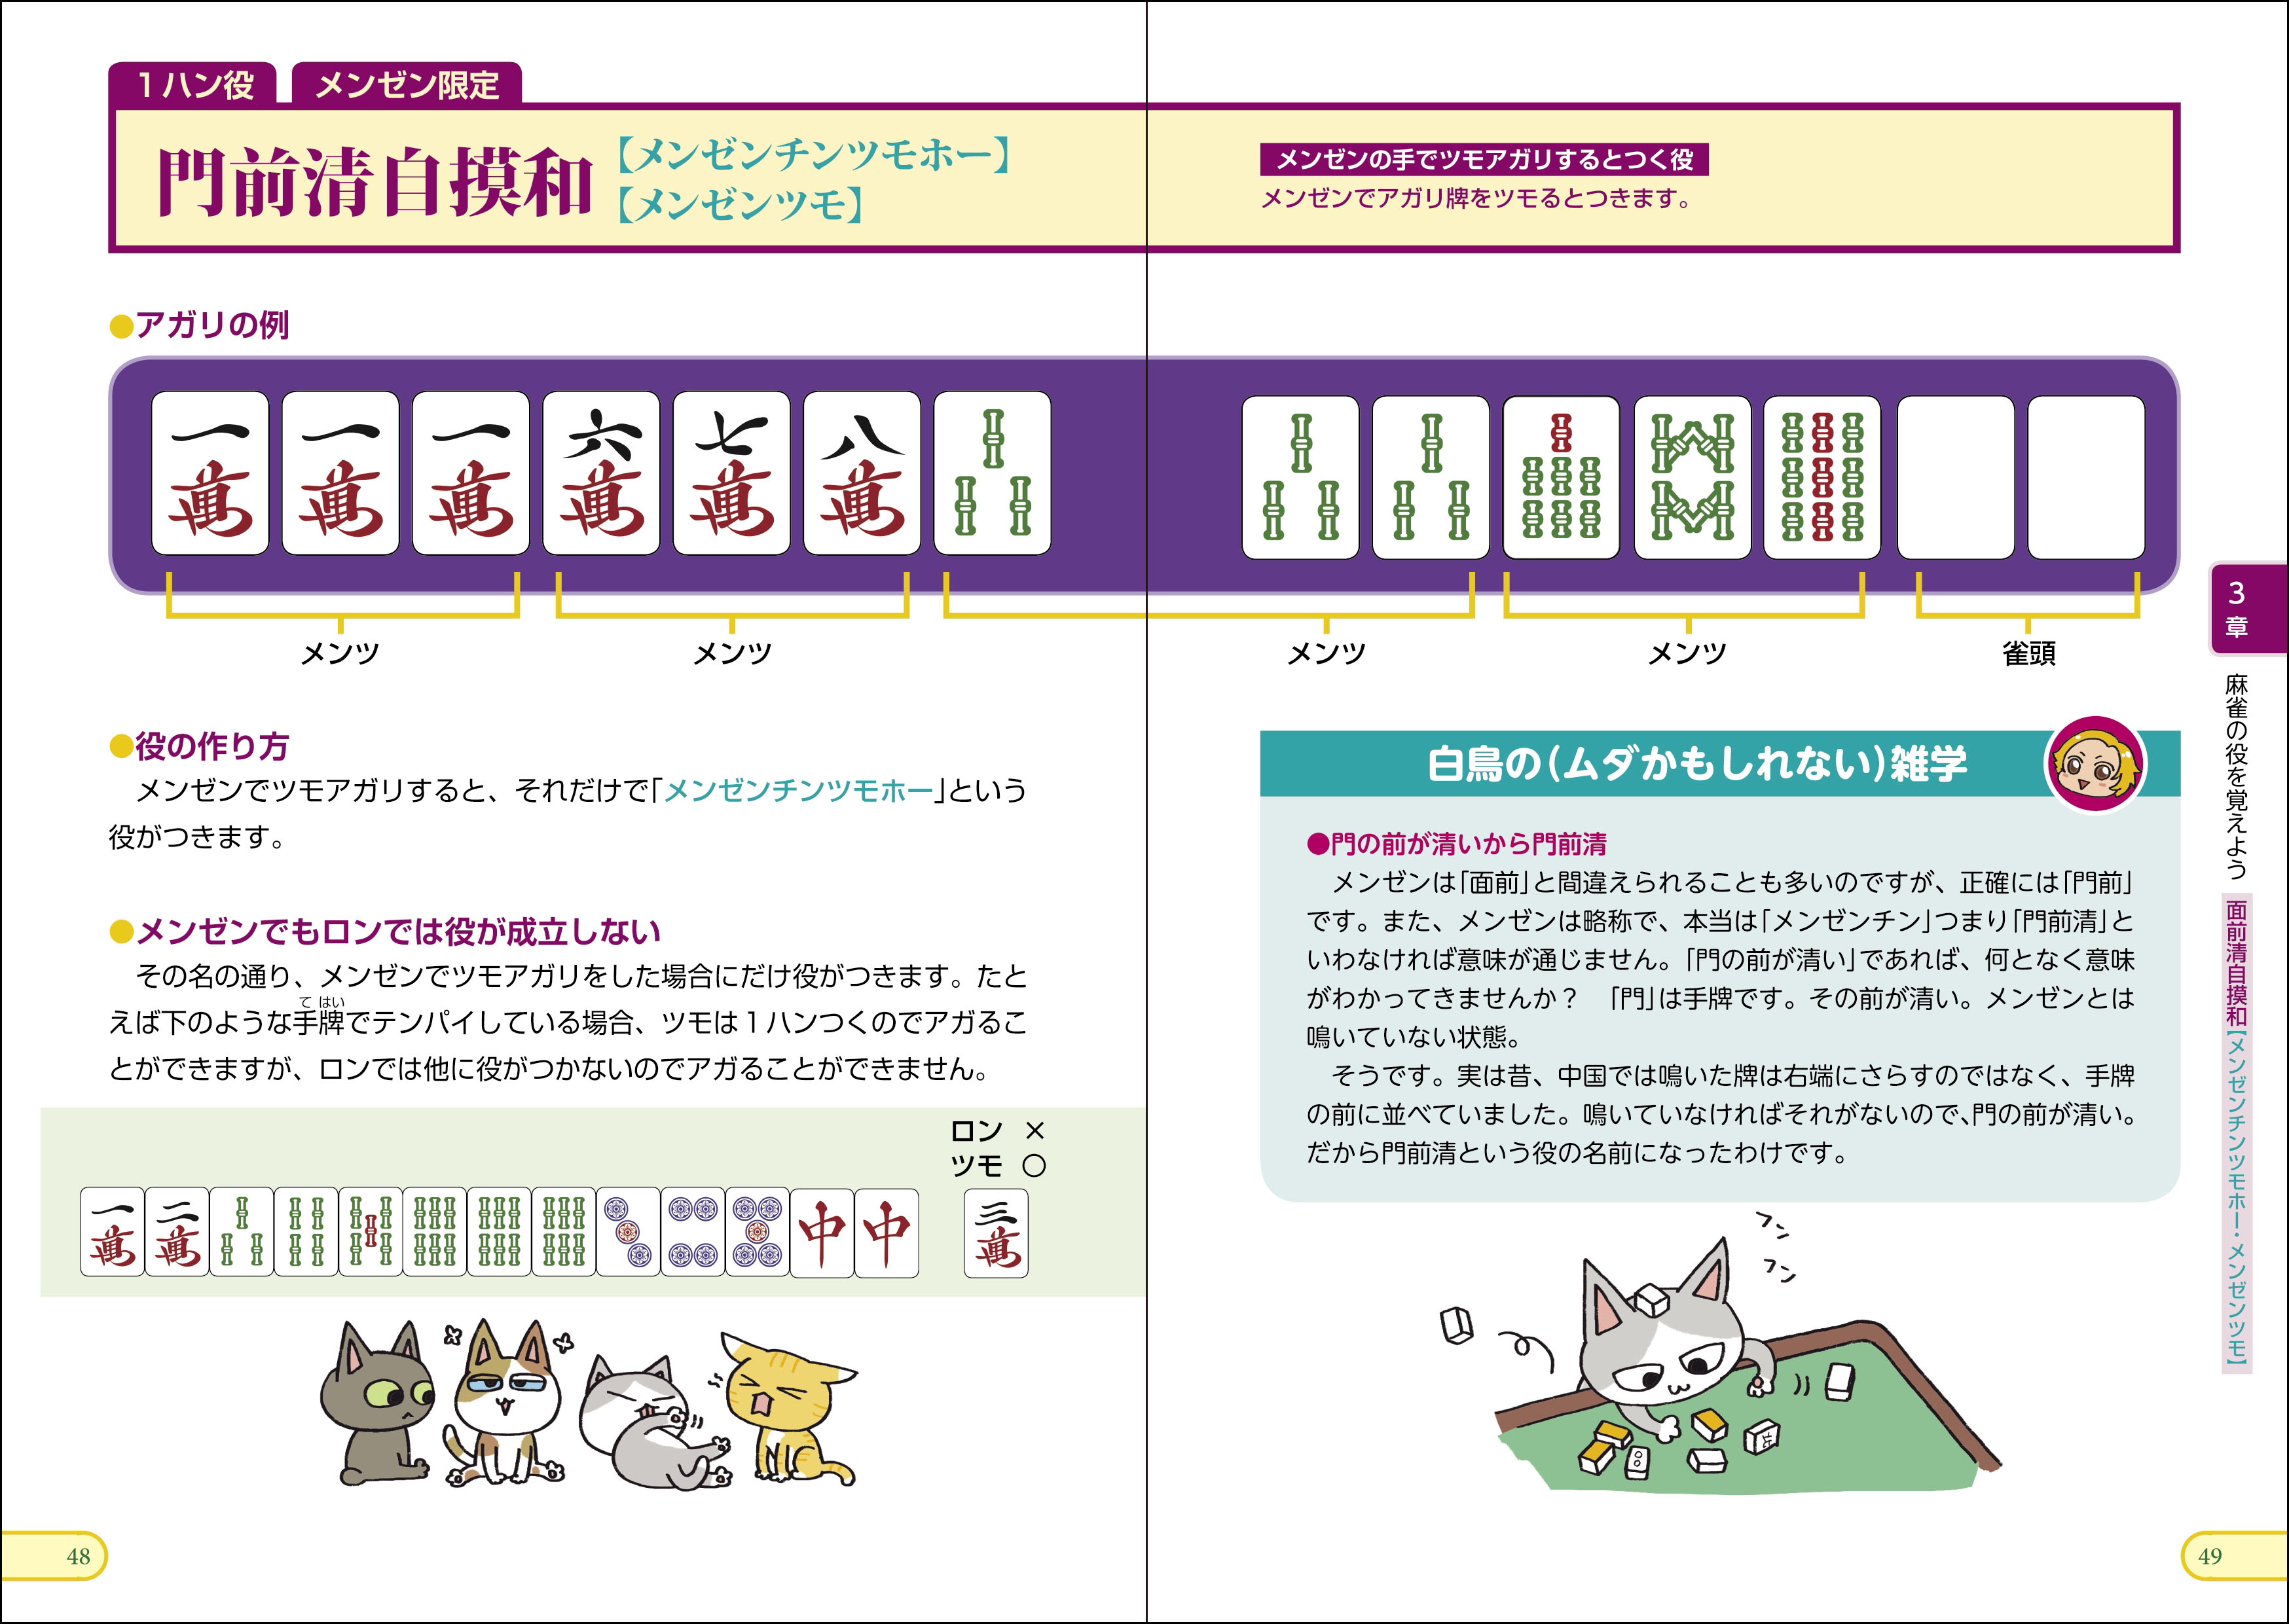 【重版情報】渋谷ABEMAS・白鳥翔プロが監修の「とにかくわかりやすい麻雀入門」で楽しく麻雀が学べるの画像